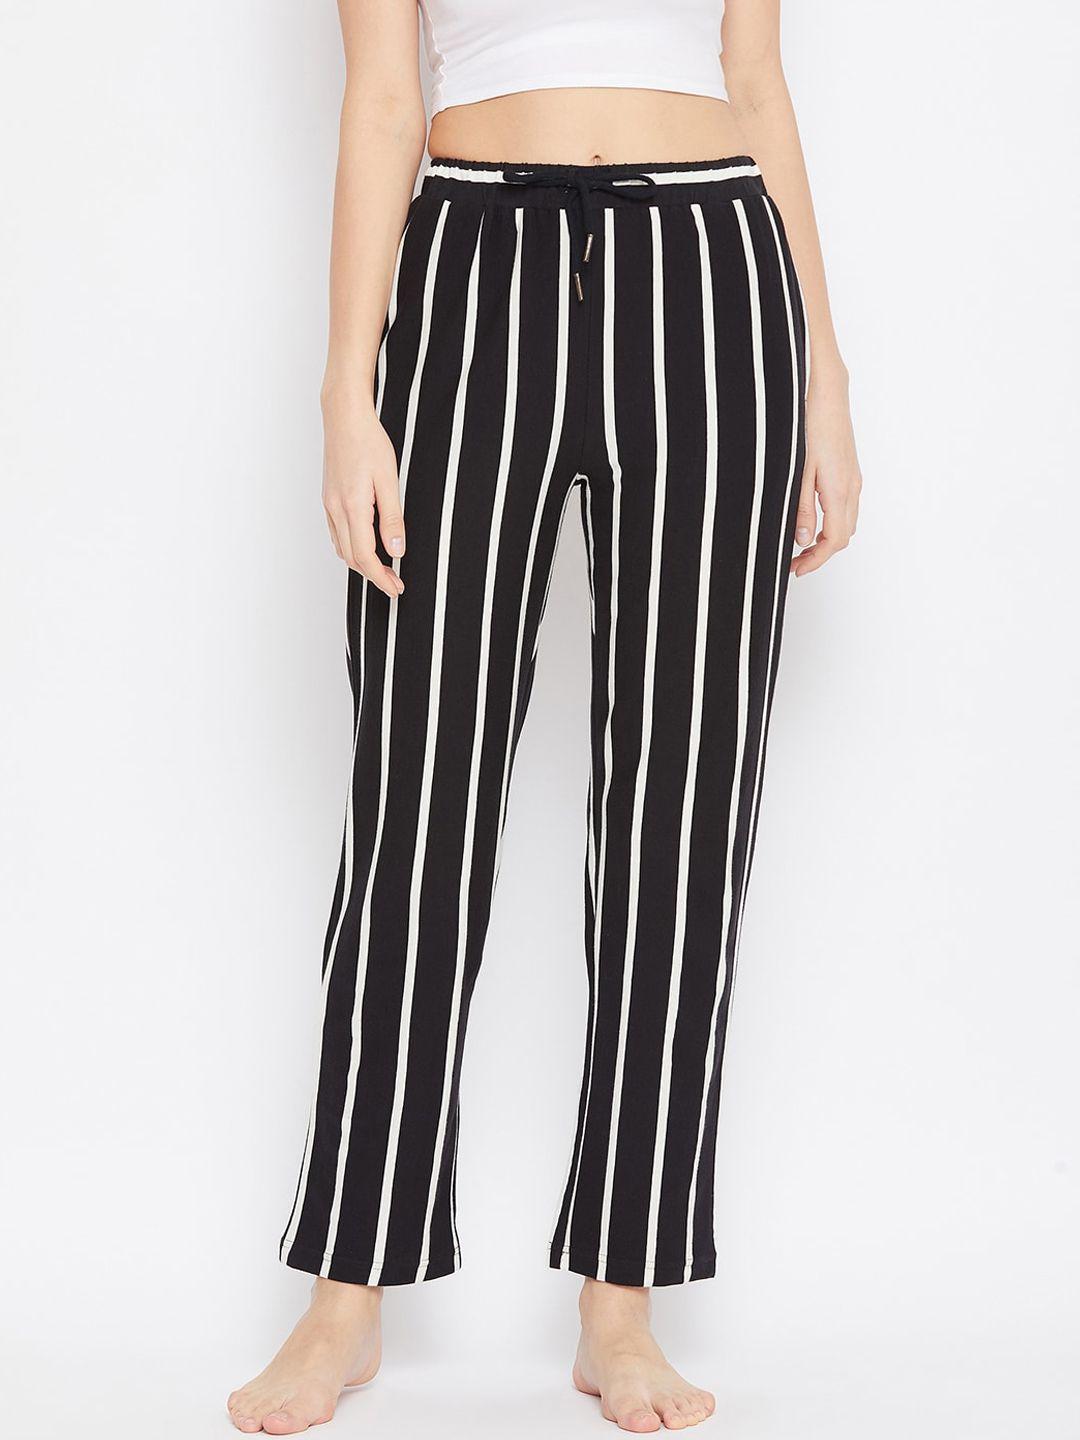 hypernation women black & off white striped cotton lounge pants